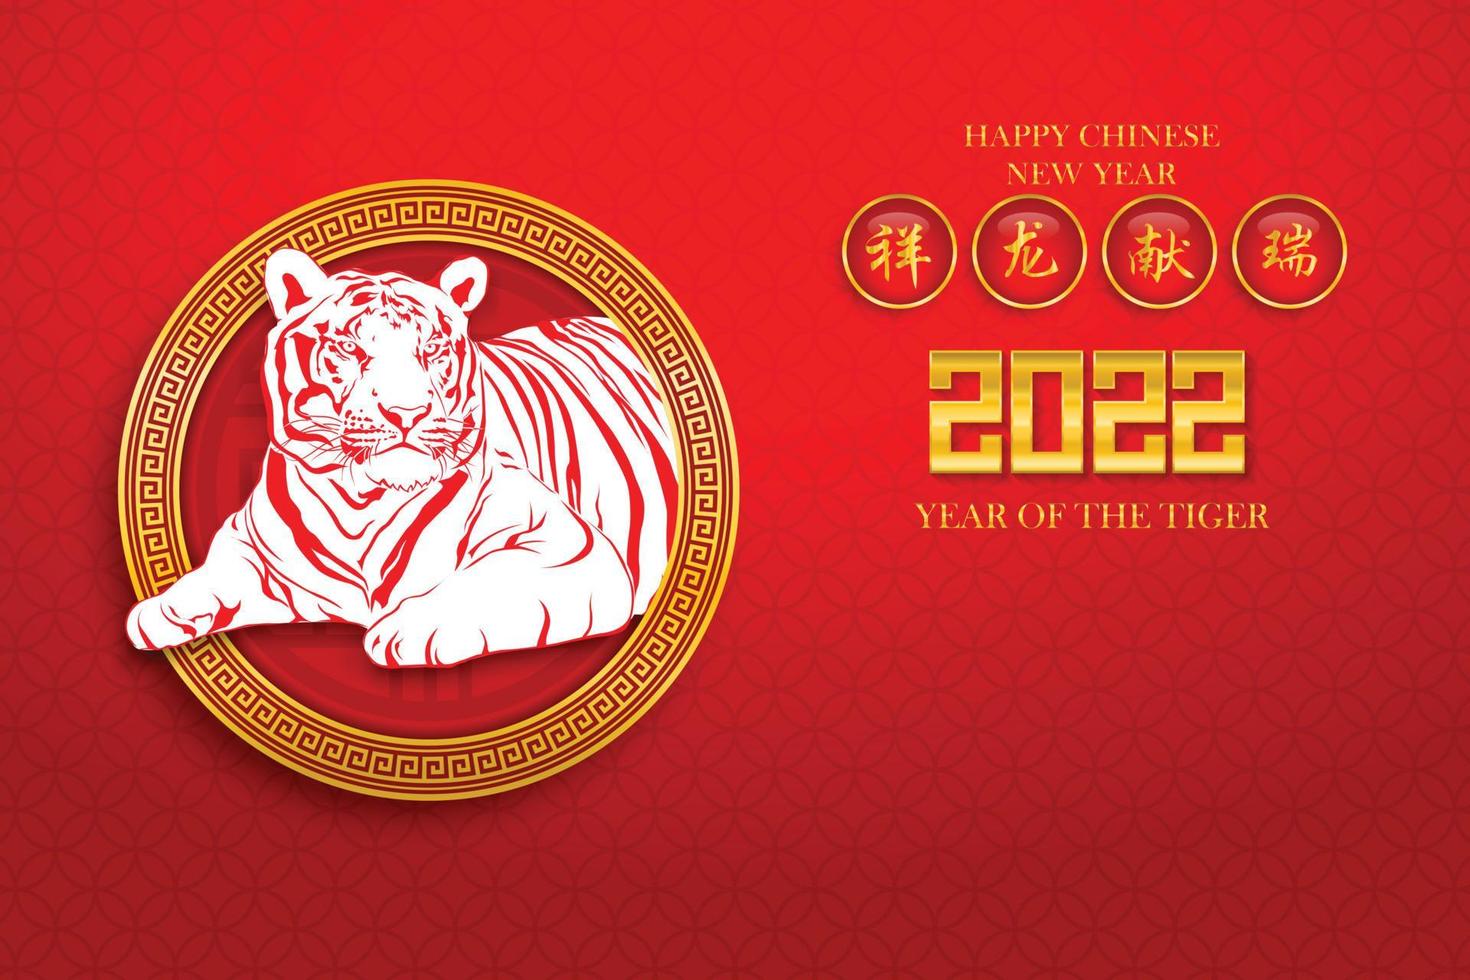 chinees nieuwjaar 2022, jaar van de tijger met rode tijger tekening voor 2022 in het chinese patroon cirkelframe op rode achtergrond. chinese tekstvertaling chinese kalender voor tijger 2022 vector